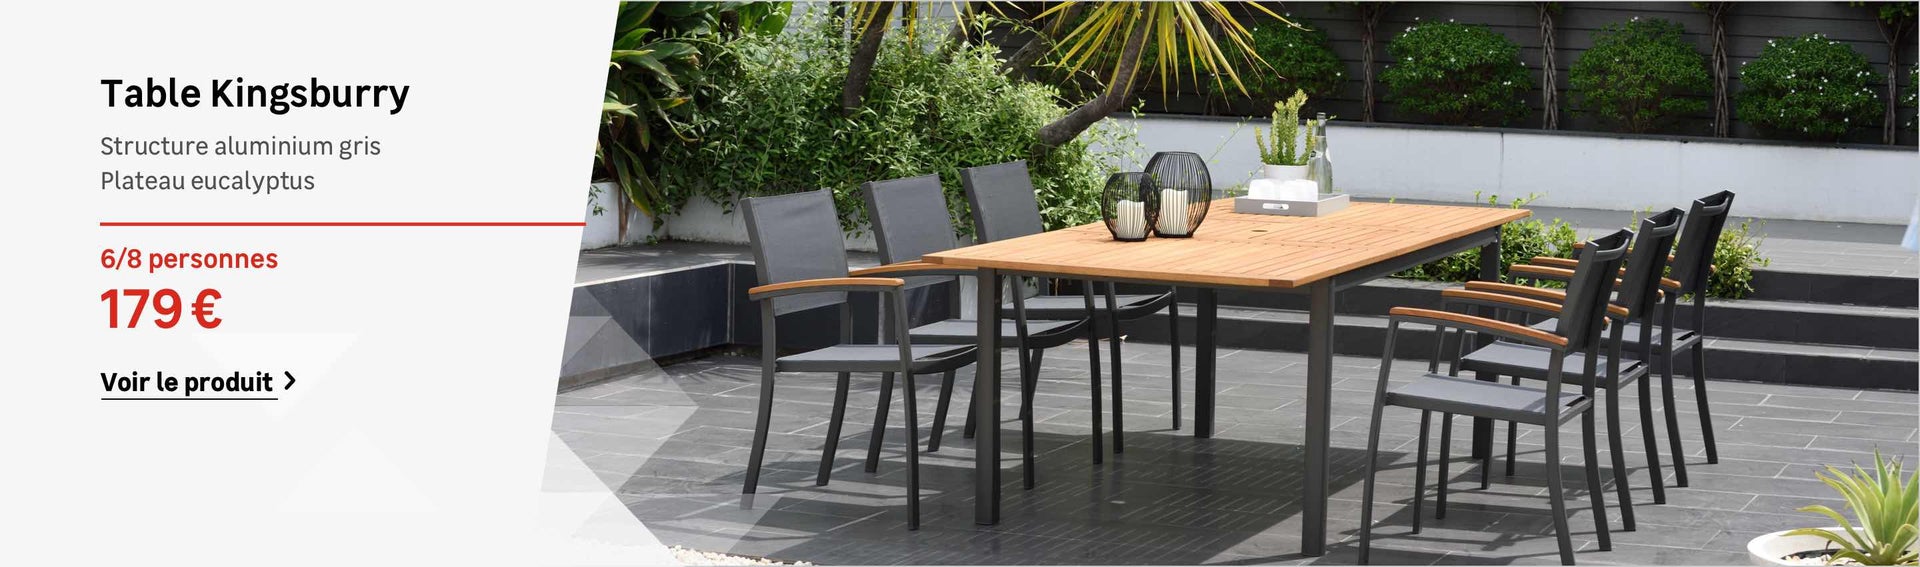 salon de jardin eucalyptus charmant table et chaise pour terrasse pas cher de salon de jardin eucalyptus